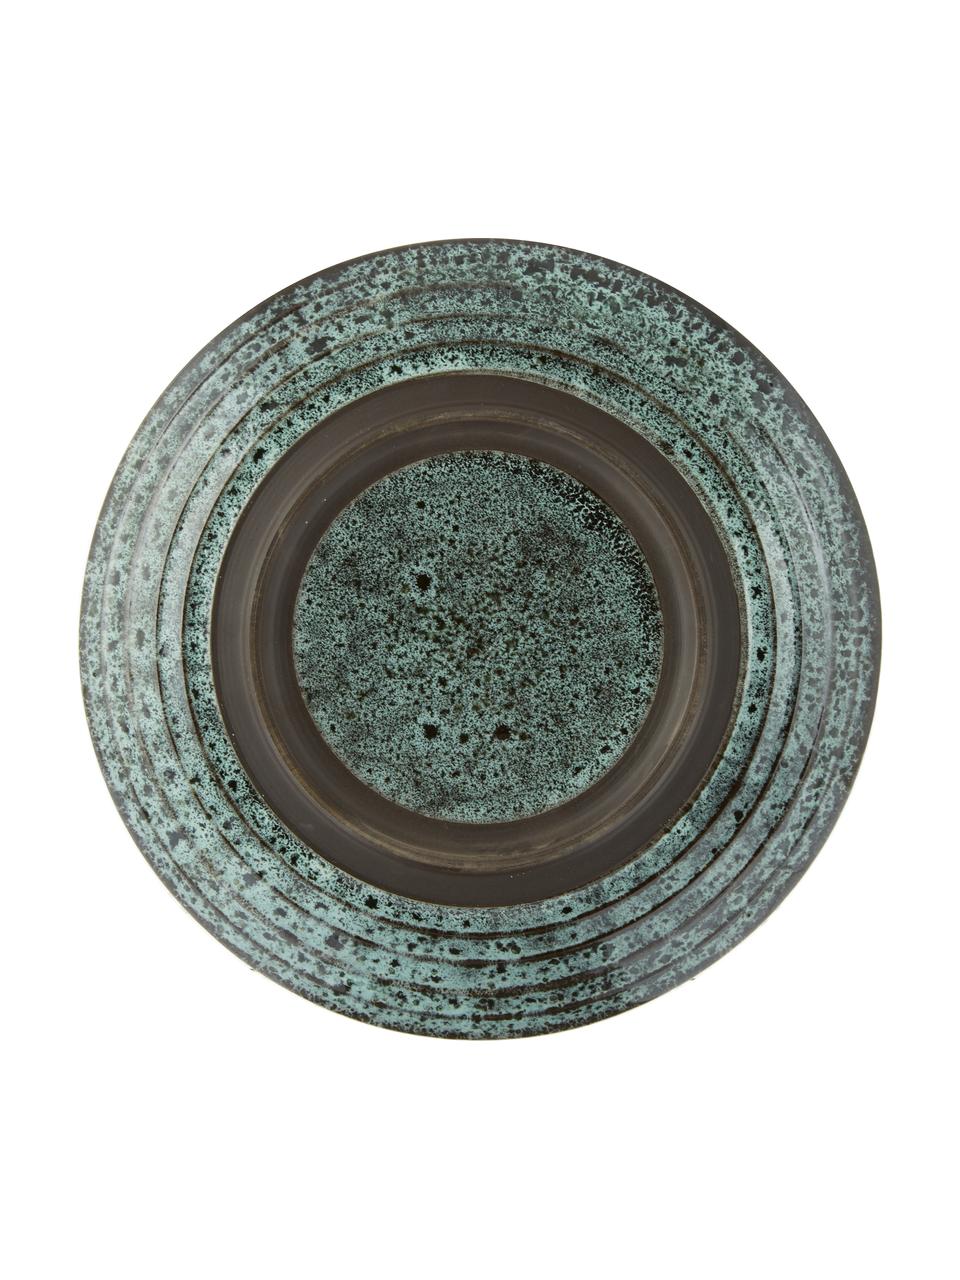 Snídaňové talíře Vingo, 2 ks, Kamenina, Modrozelená, černá, Ø 22 cm